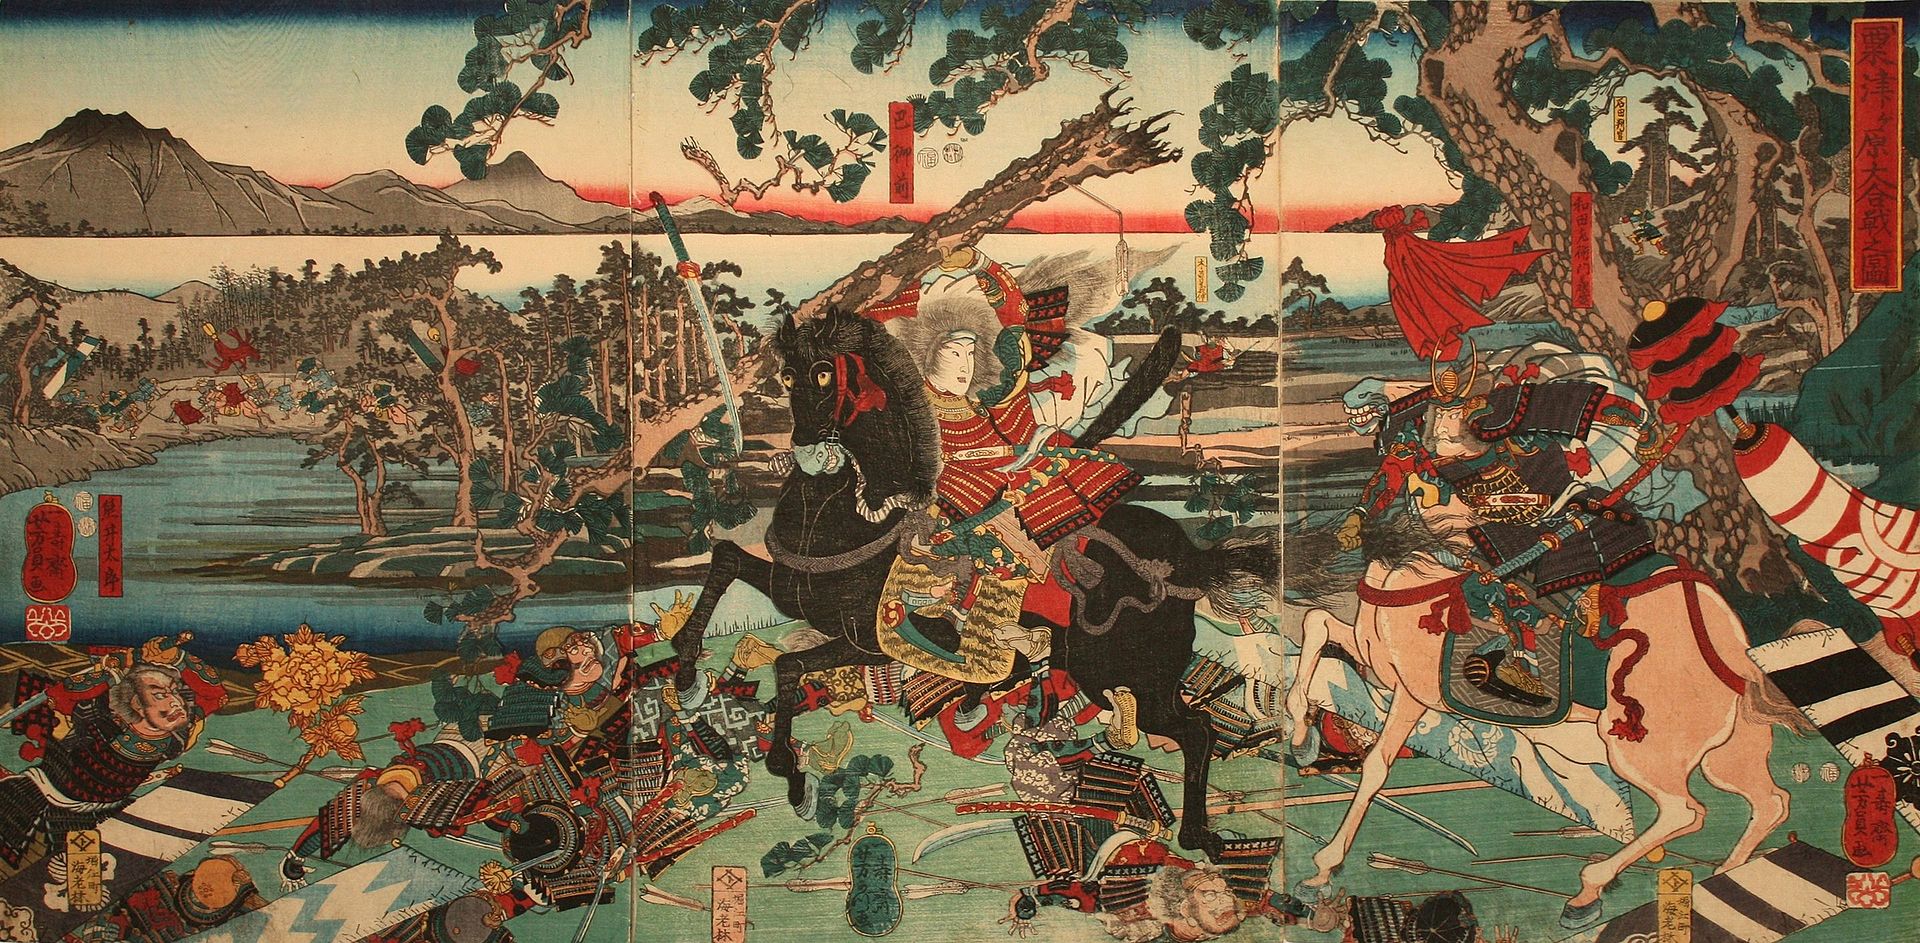 Kracht van de Vrouwelijke Samurai en haar Beheersing van de Katana